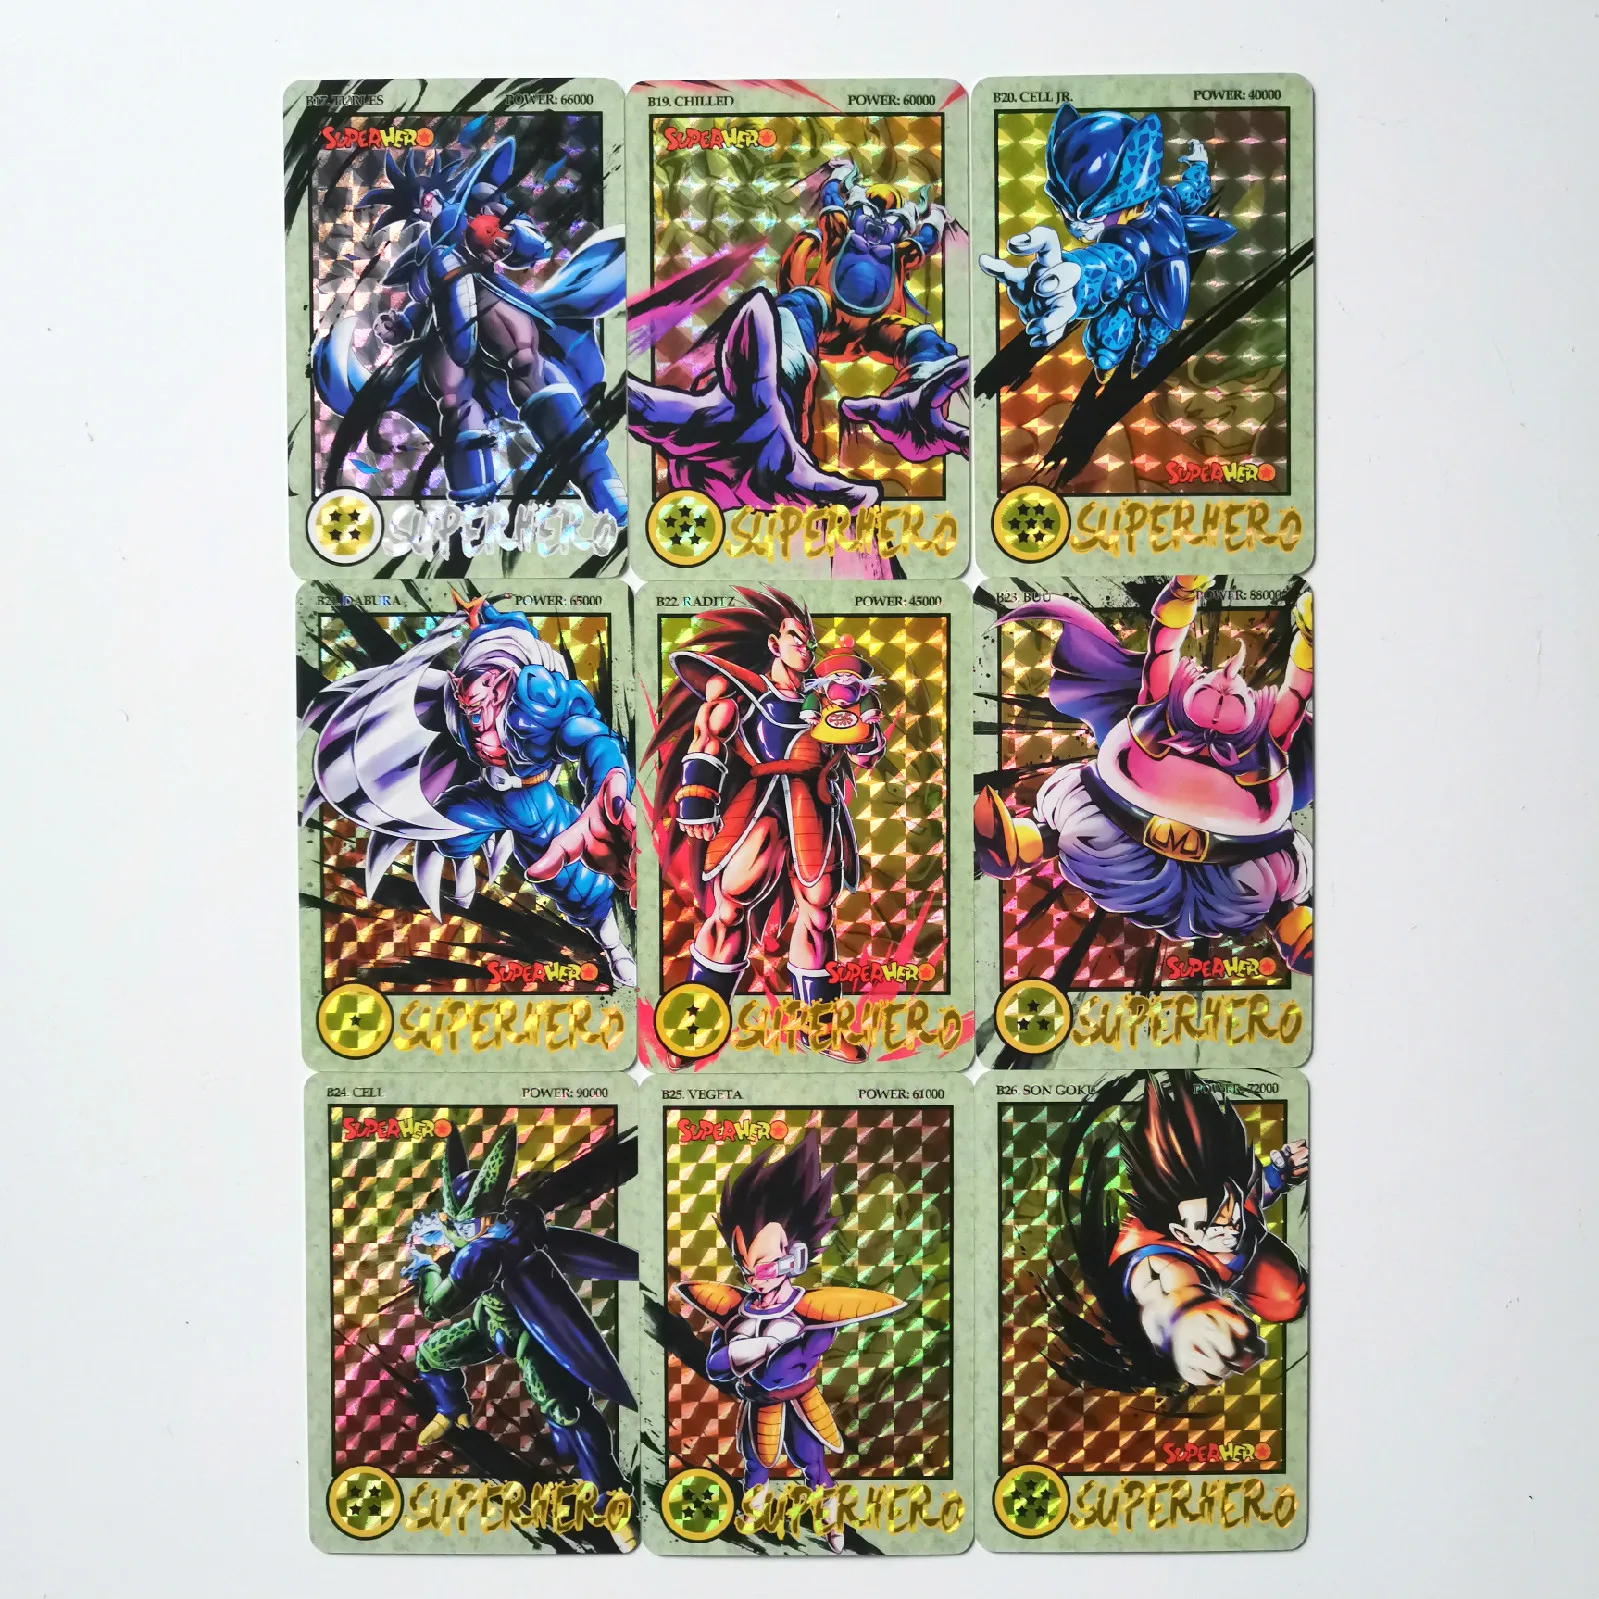 27 шт./компл. супер Dragon Ball Z чернила рельеф герои битва карты Ультра инстинкт Гоку Вегета игровая коллекция карт